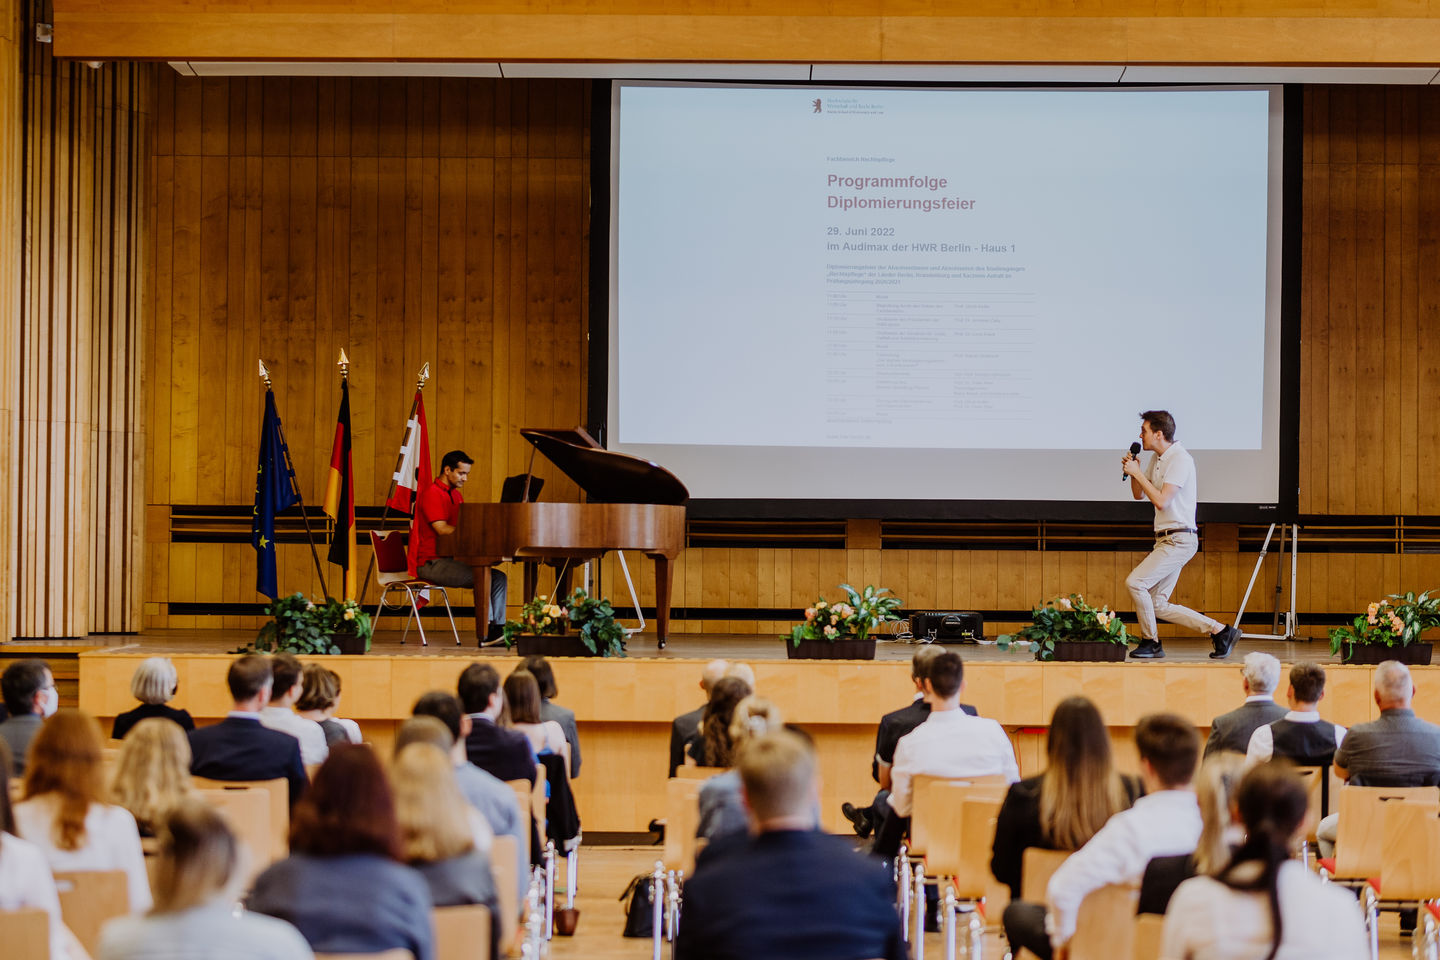 Graduierungsfeier des Fachbereichs Rechtspflege der HWR Berlin am 29. Juni 2022. Foto: Lukas Schramm